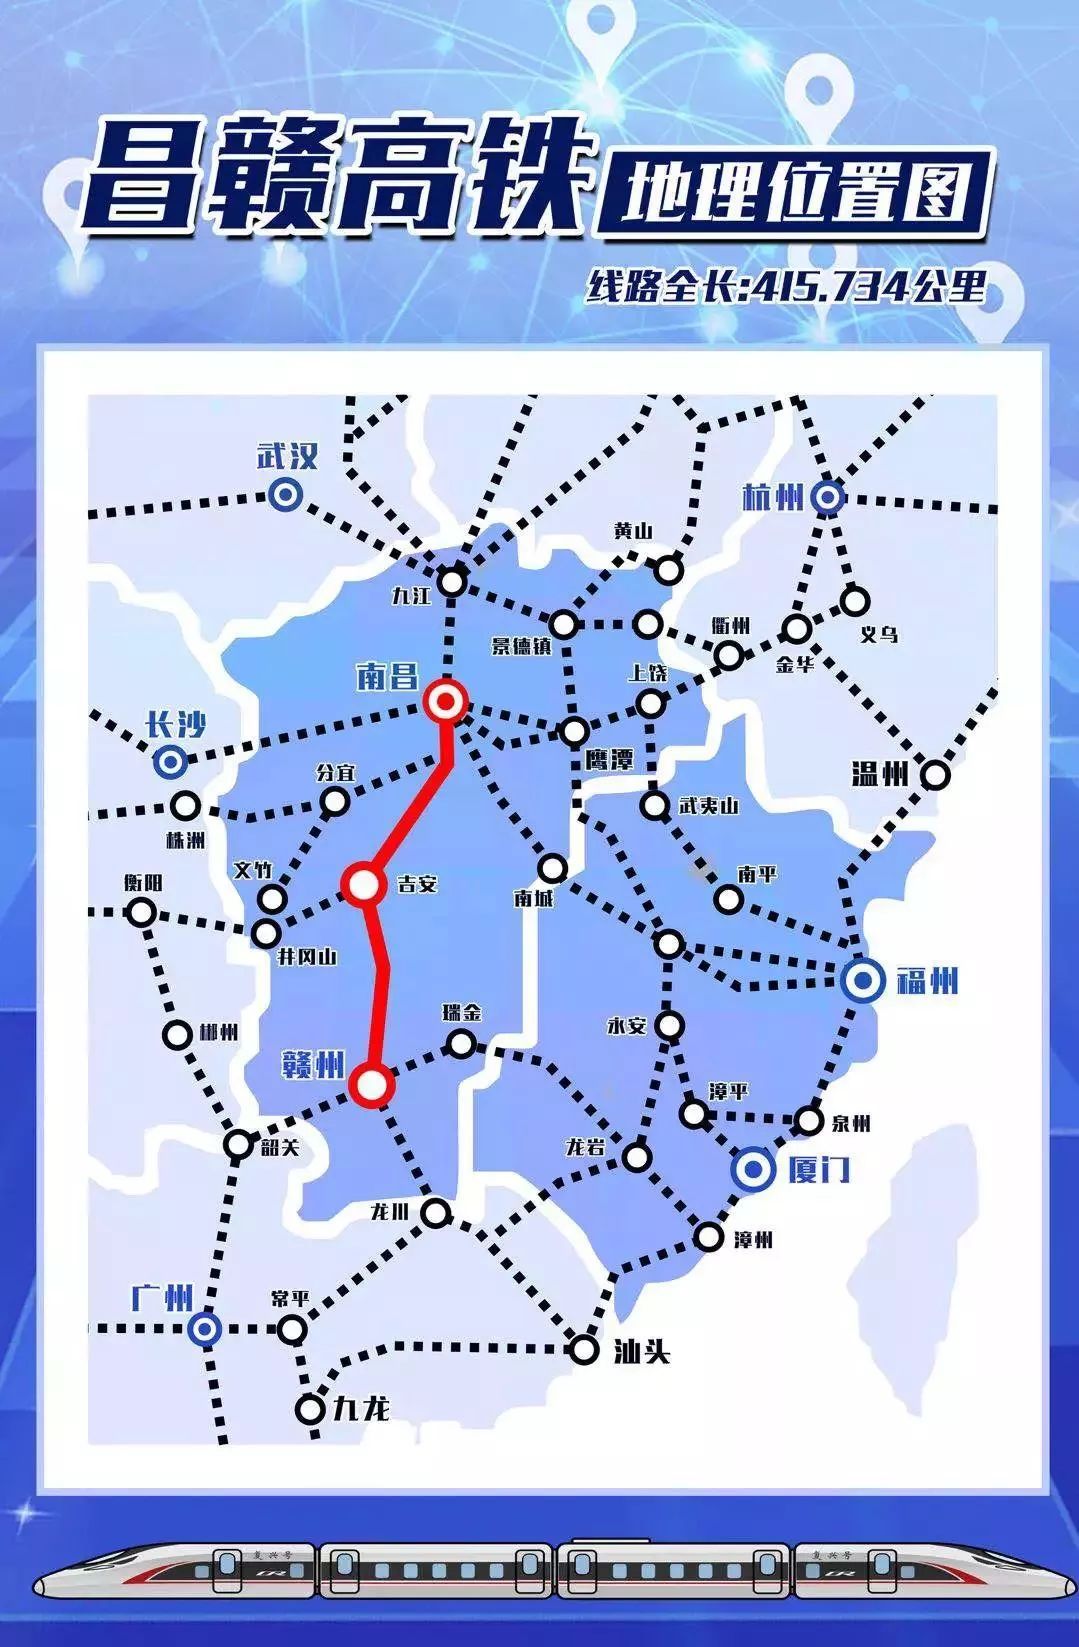 并将与沪昆高铁 向莆,赣瑞龙,衡茶吉铁路 以及在建的赣深,安九高铁相